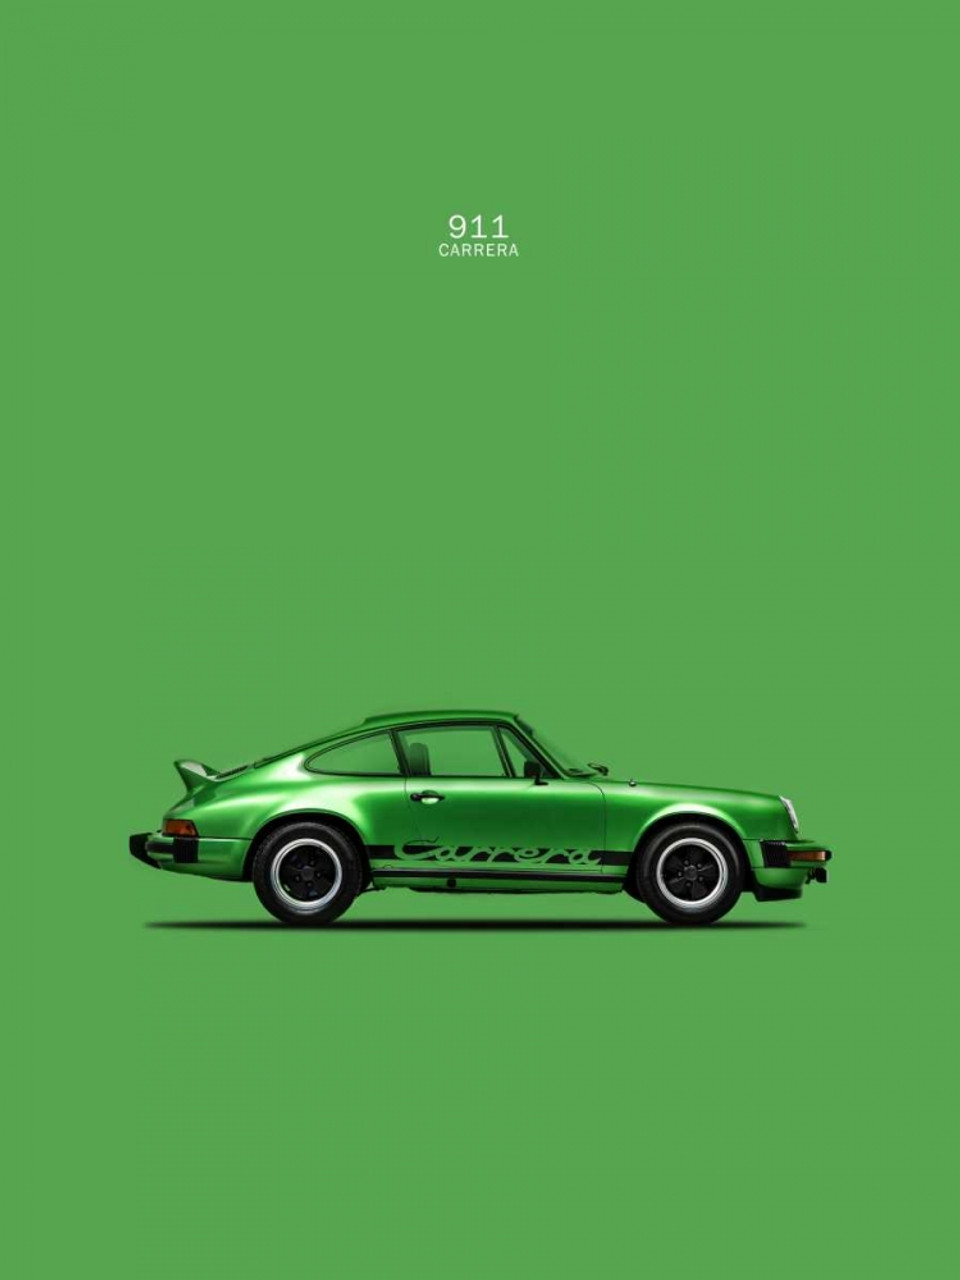 Porsche 911 Car Art Poster Print • Rear View Prints